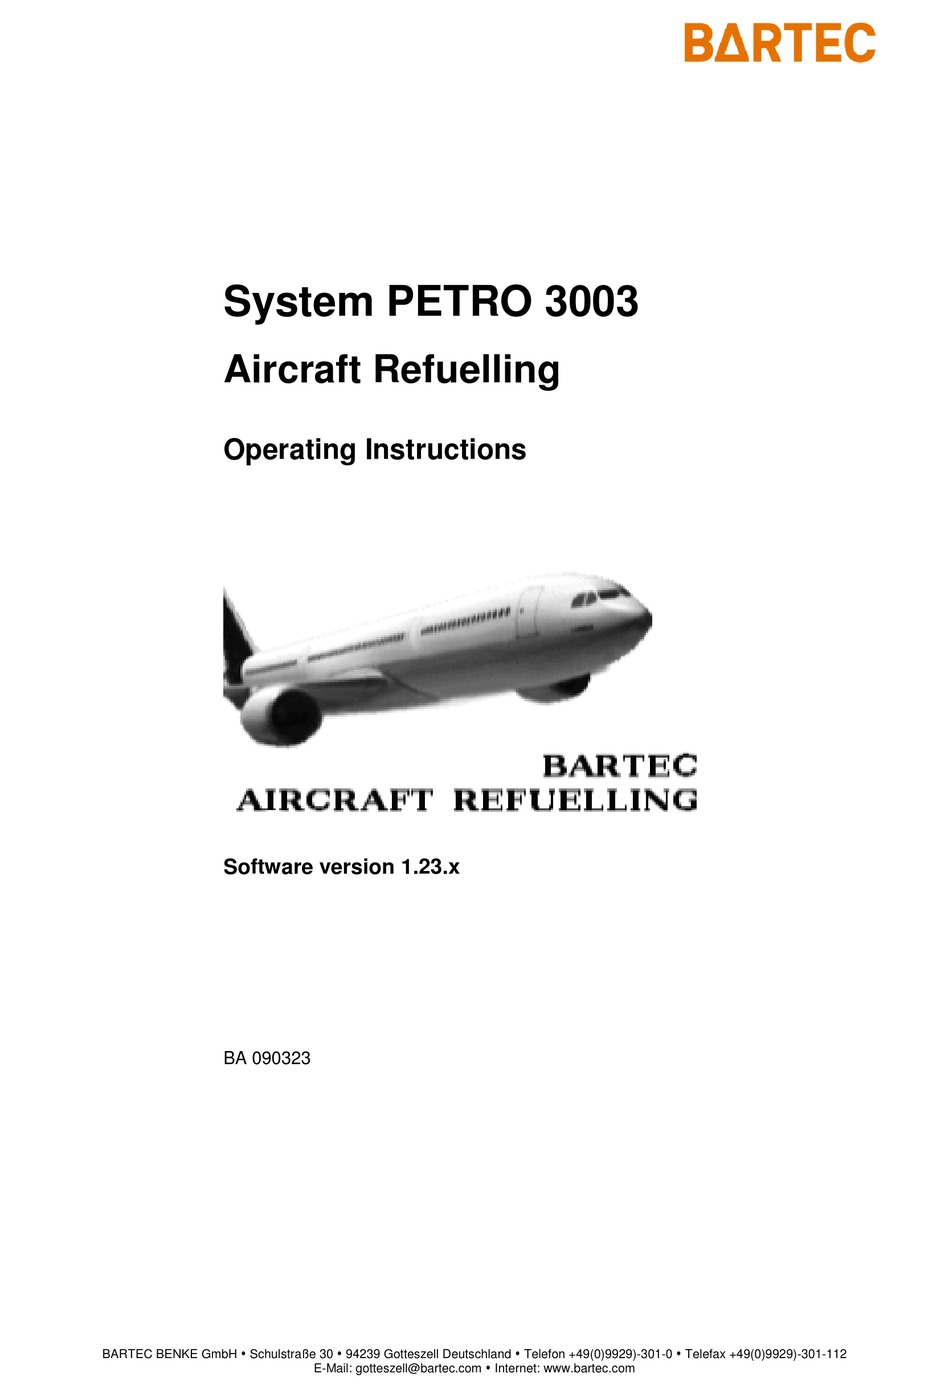 bartec-petrodat-3003-operating-instructions-manual-pdf-download